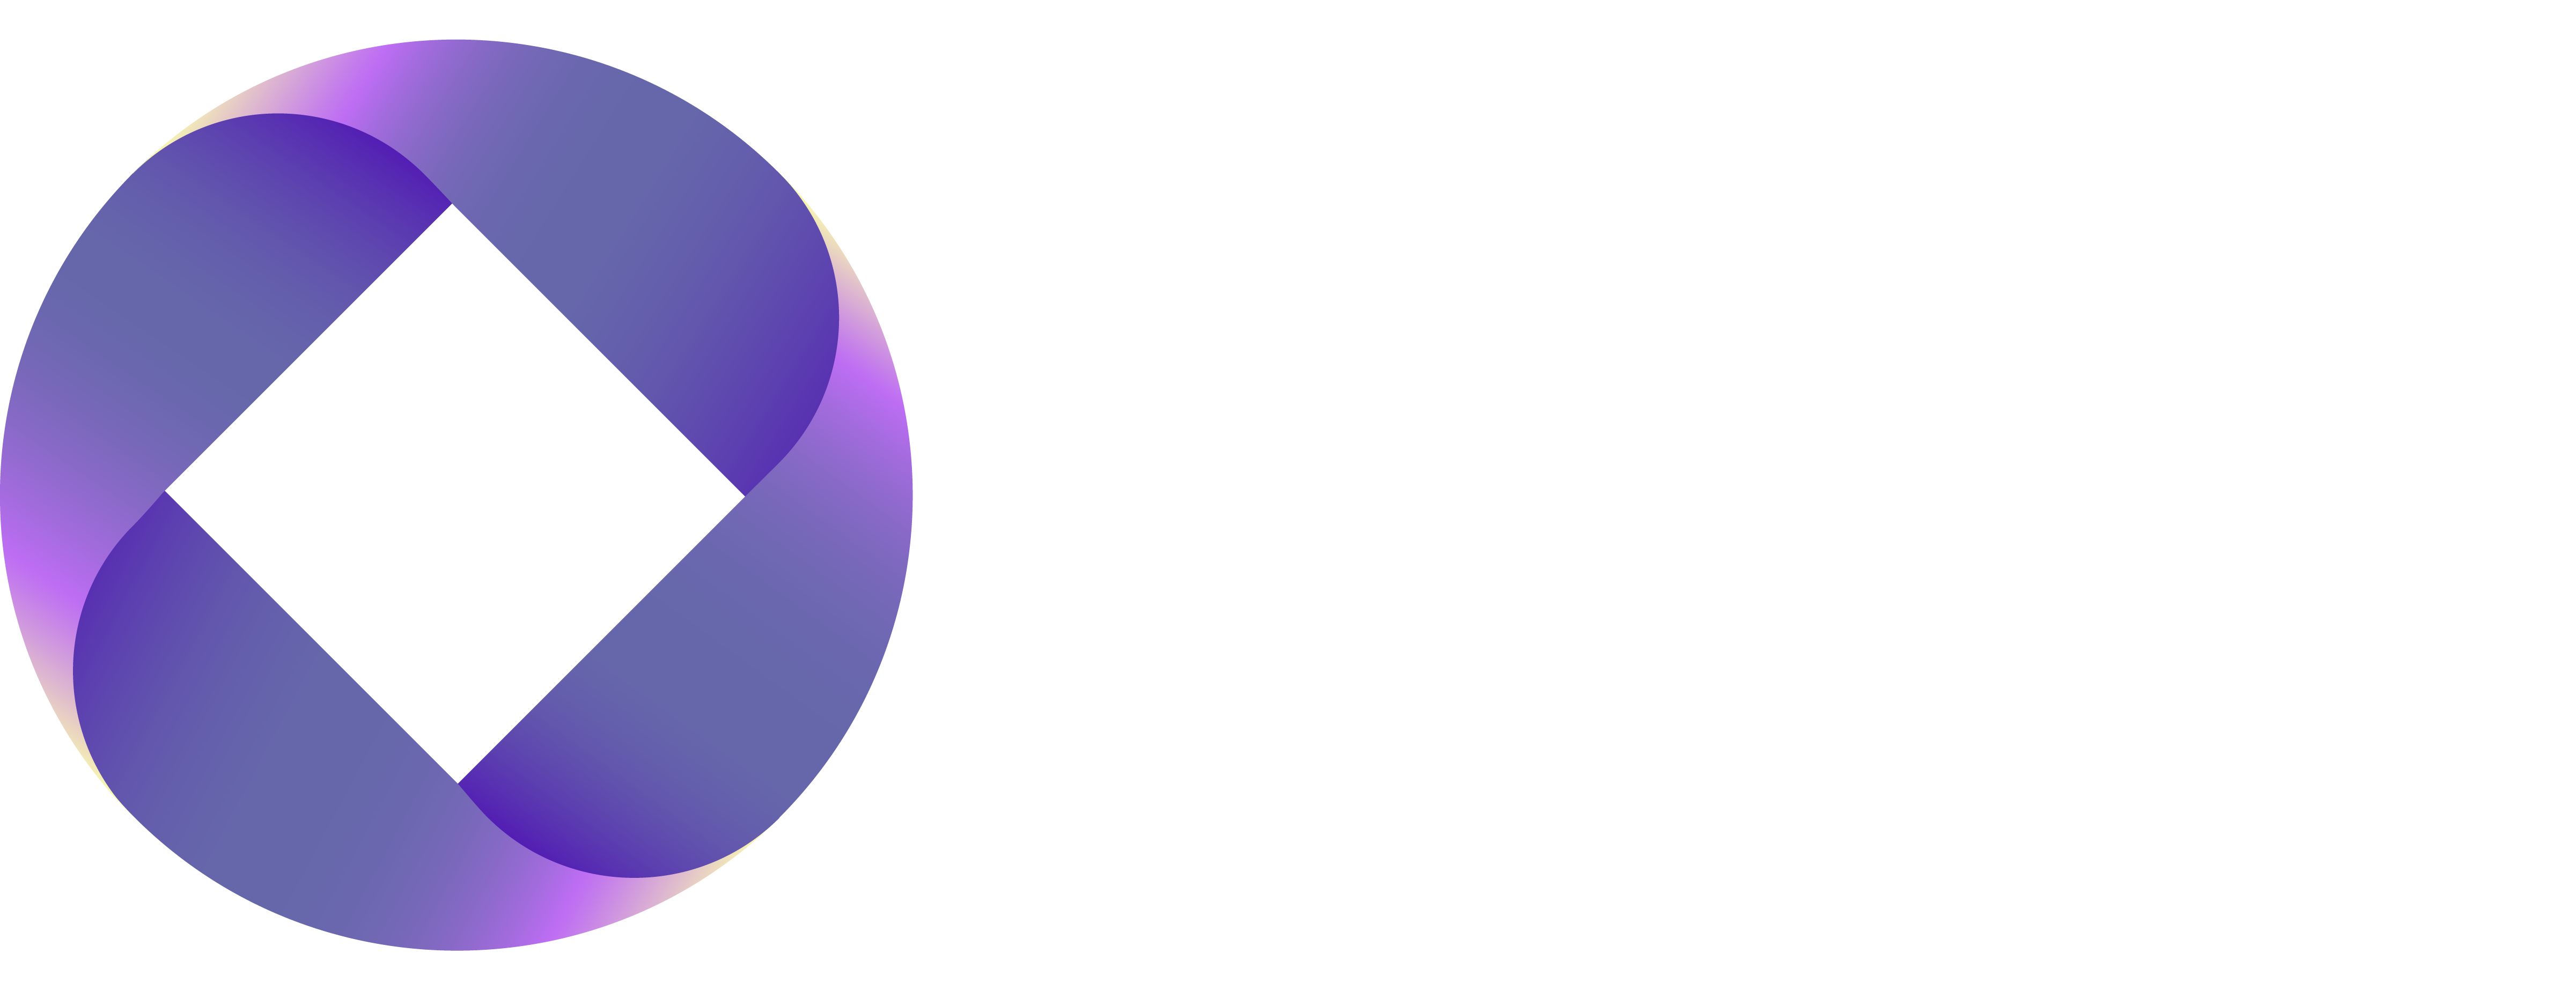 Octo Capital